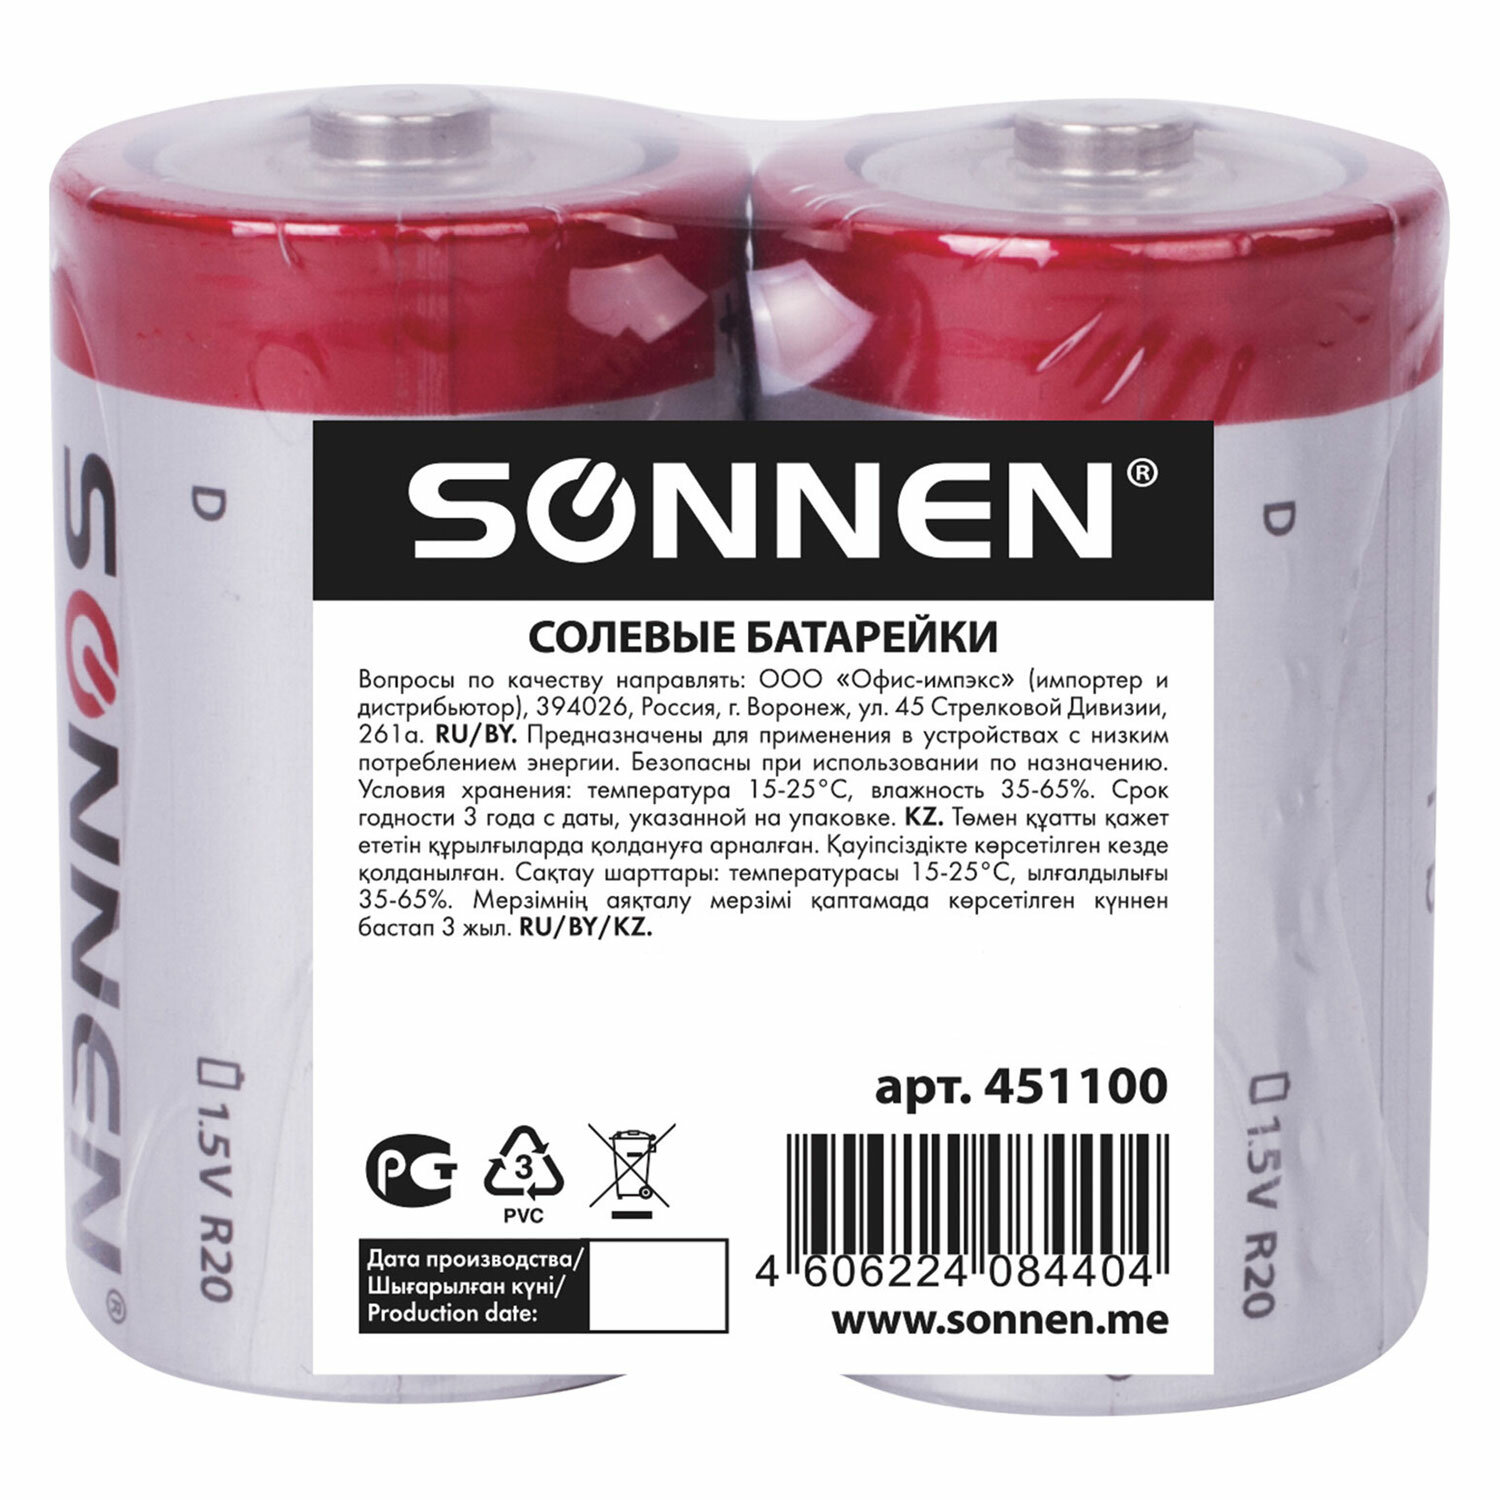 Батарейки Sonnen элементы питания солевые тип D 2 штуки для часов радио игрушек весов - фото 6